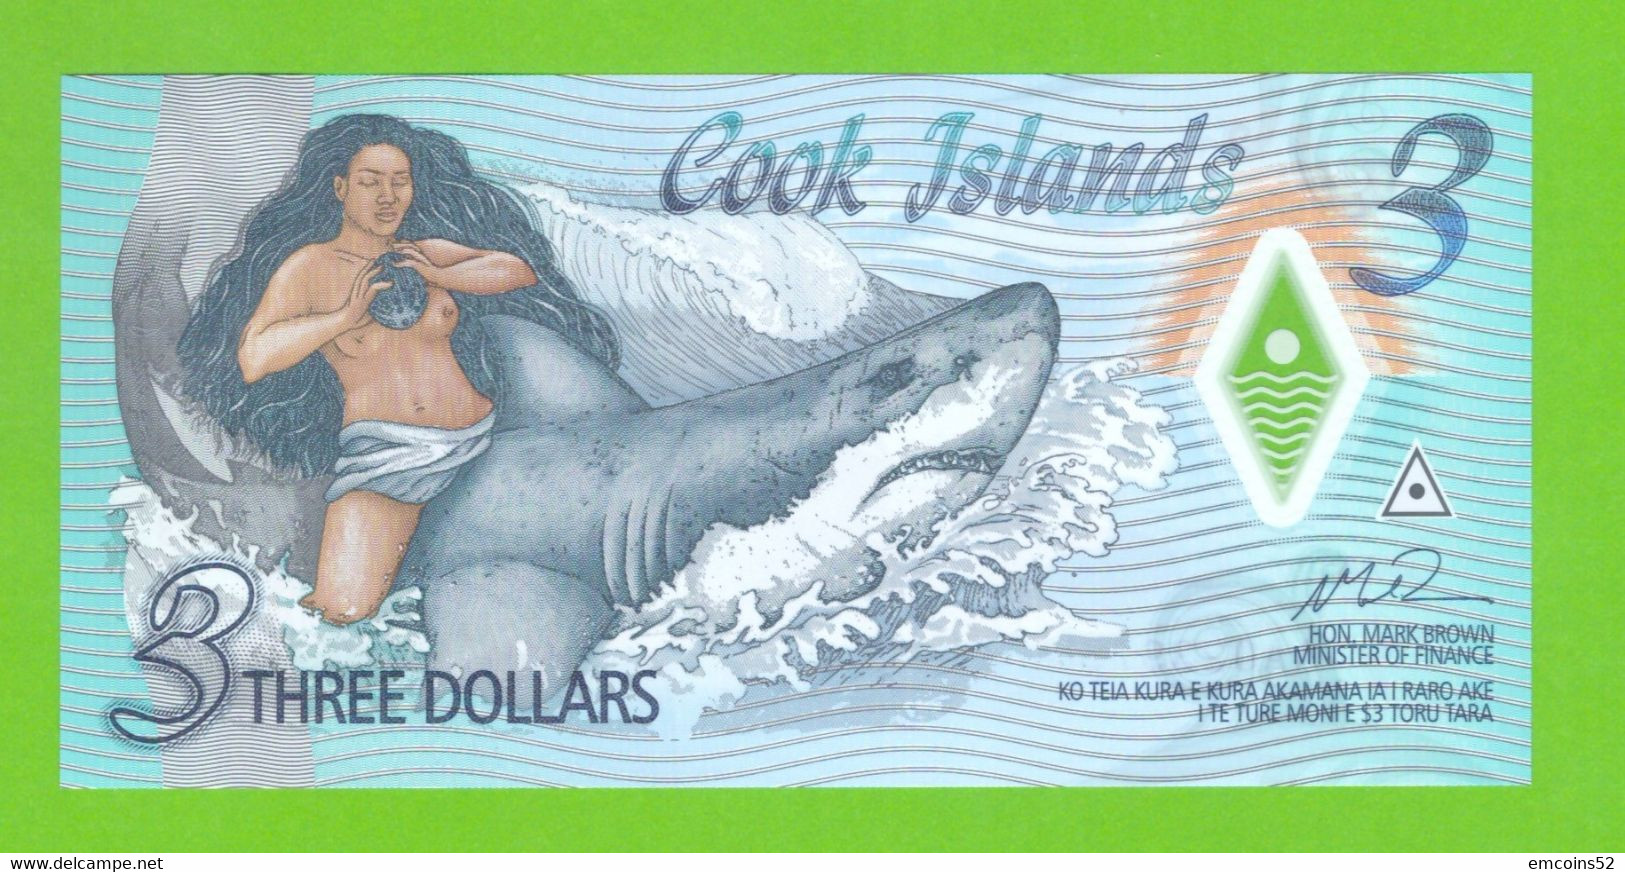 COOK ISLANDS 3 DOLLARS 2021  P-11a  UNC - Cook Islands